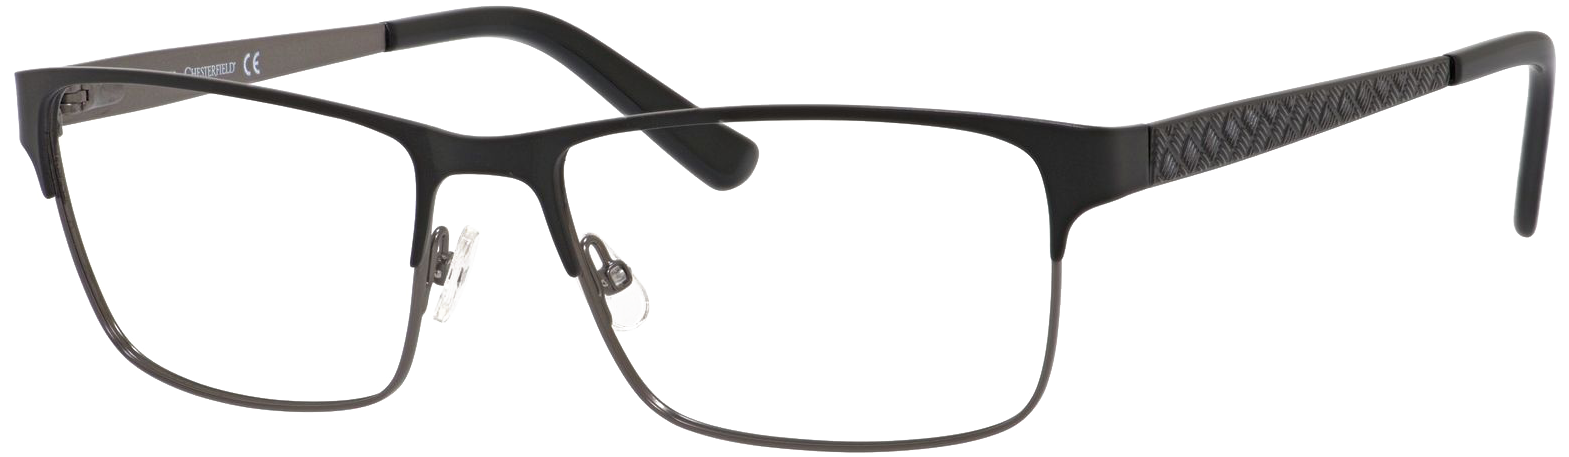 Black Designer Eyeglasses Transparent Background PNG image